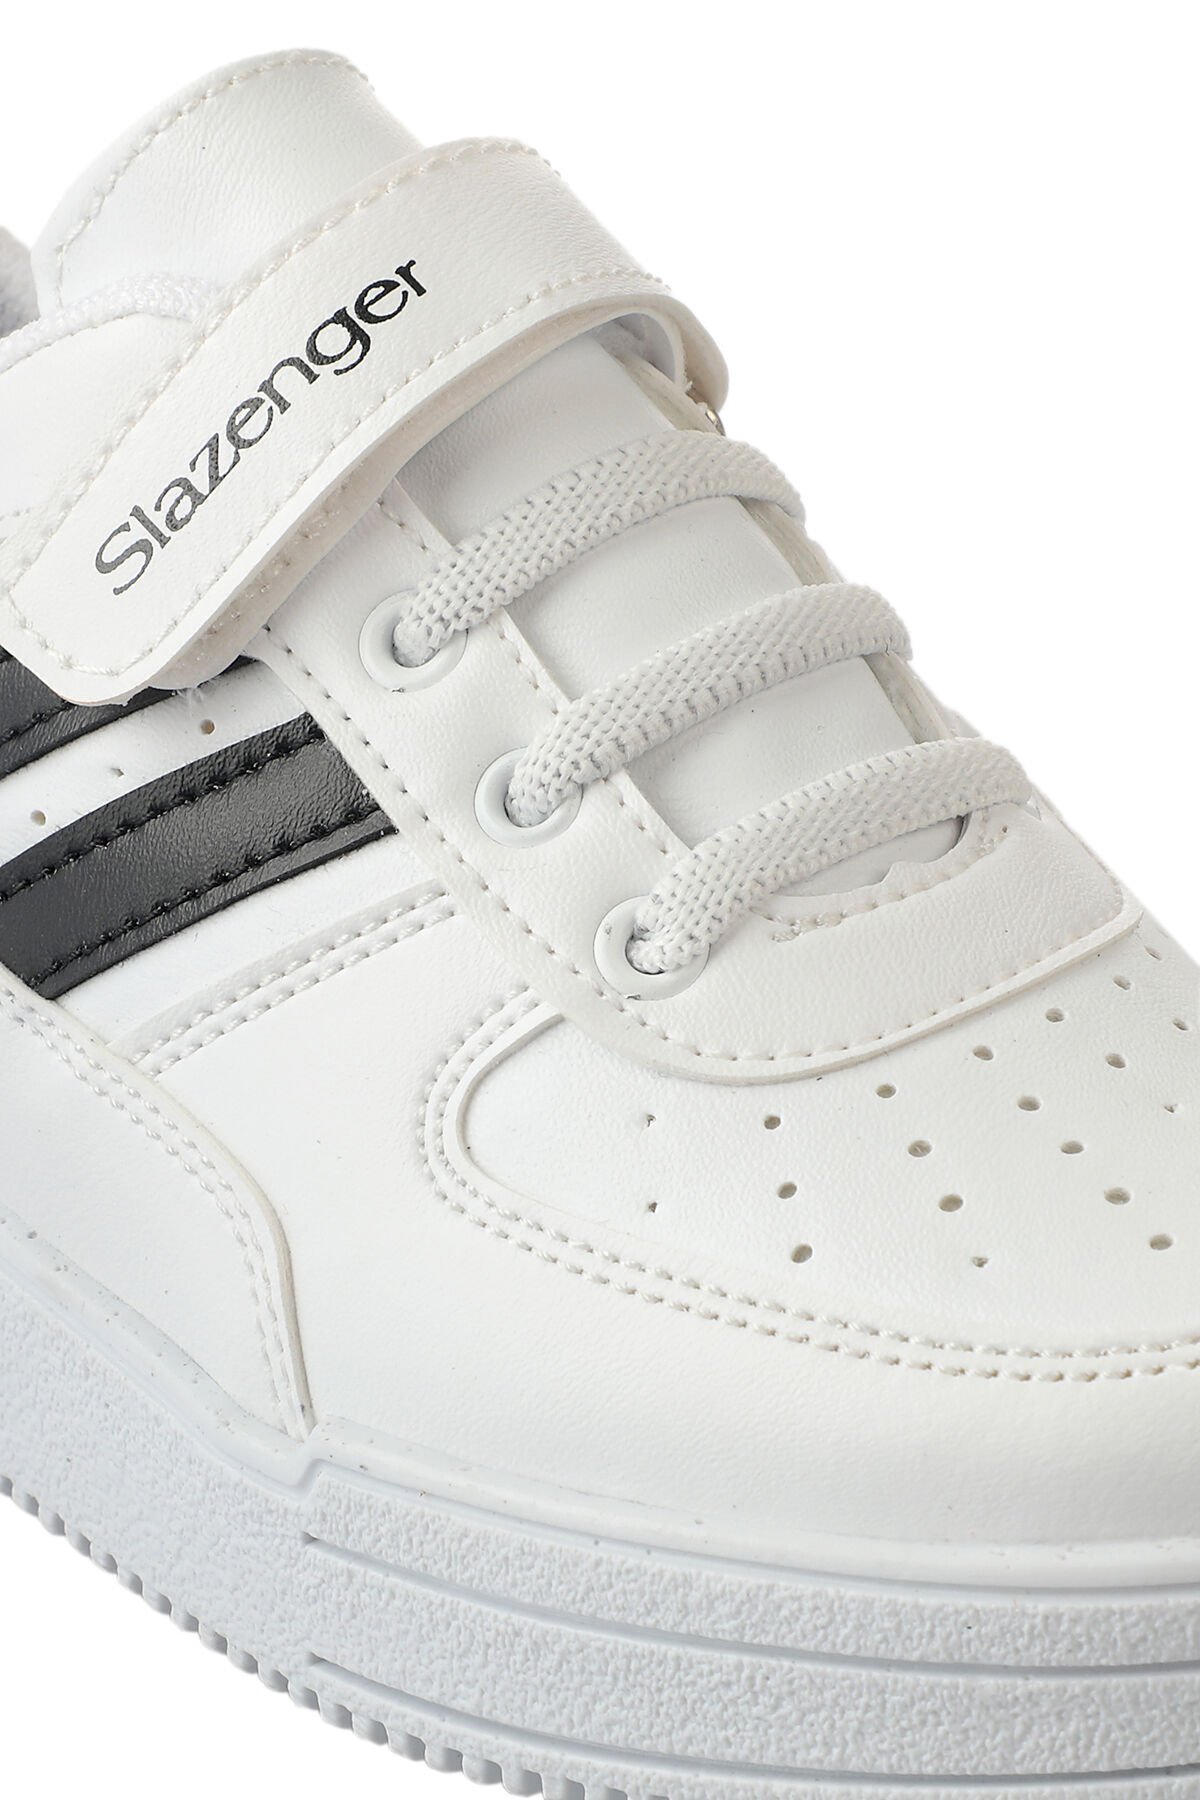 Slazenger CAMP Sneaker Erkek Çocuk Ayakkabı Beyaz / Siyah - Thumbnail